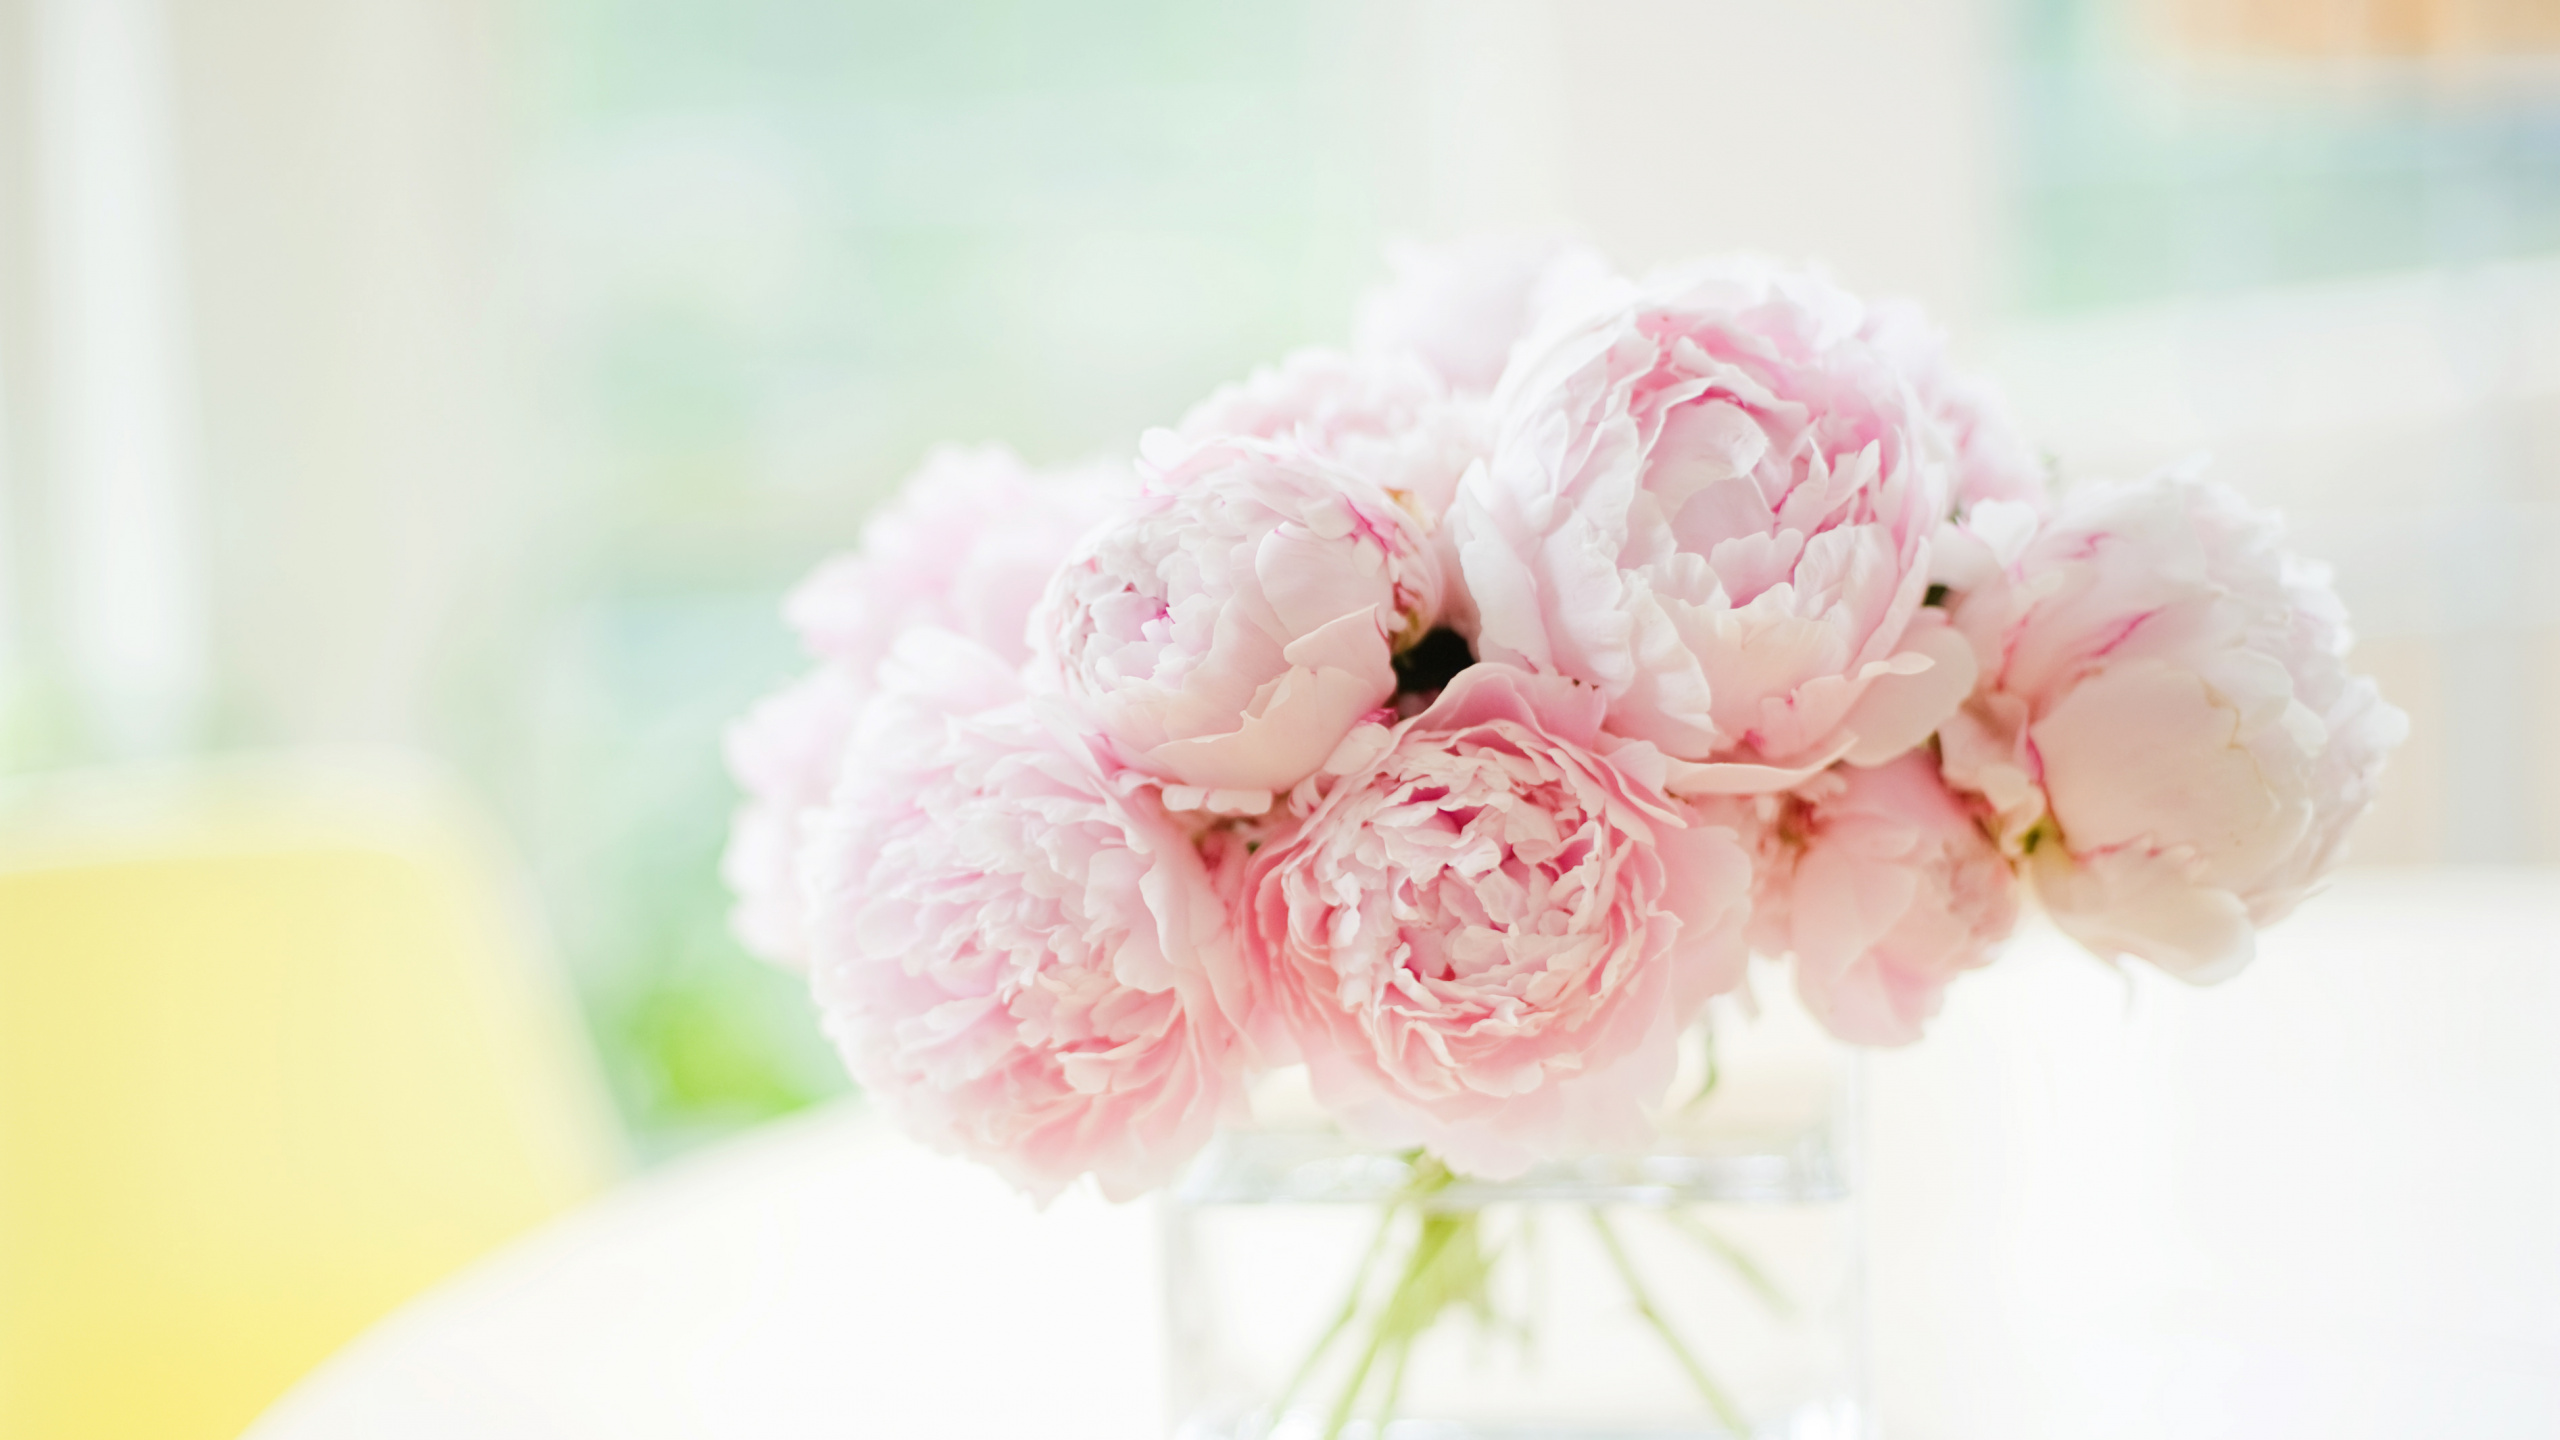 牡丹, 白色, 粉红色, 切花, 玫瑰花园 壁纸 2560x1440 允许